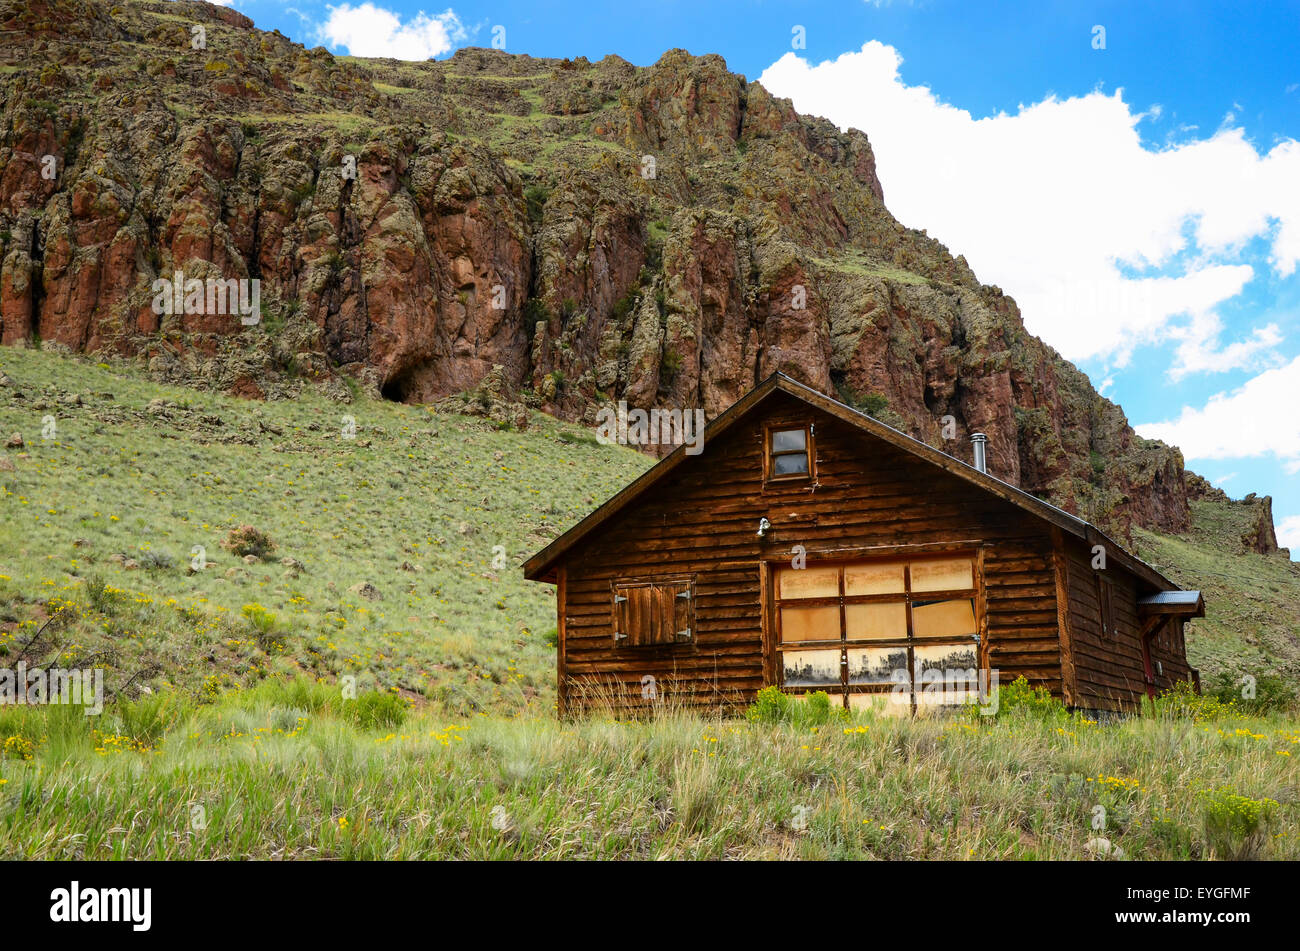 An old cabin in the San Juan Mountains, Colorado Stock Photo